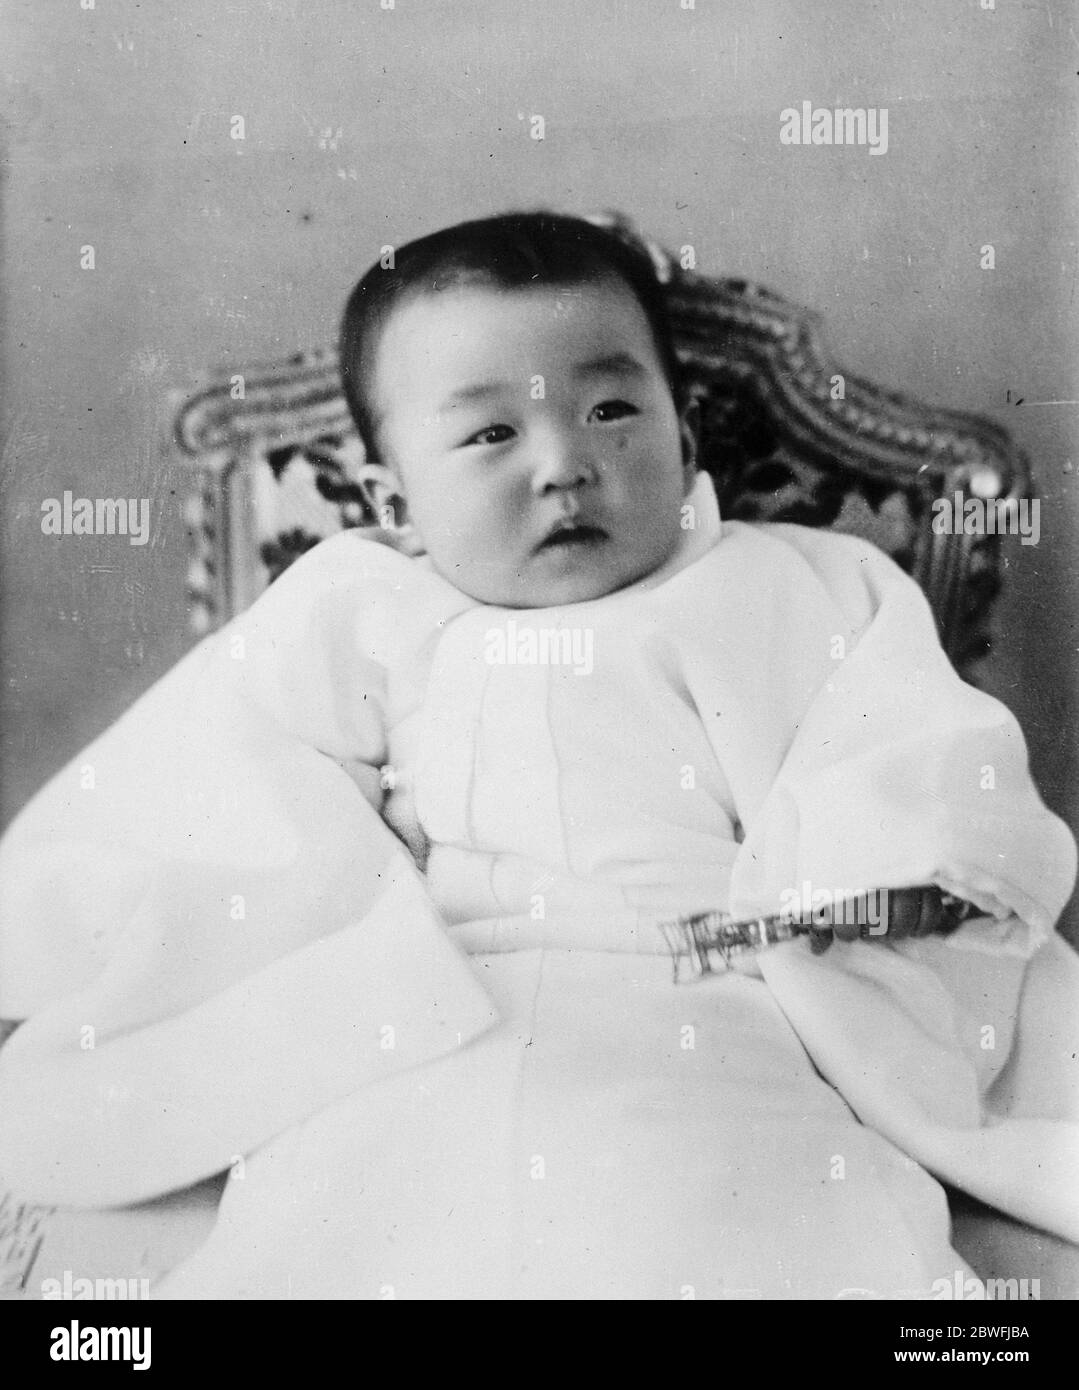 Bébé royal du Japon . HIH Princesse Shigeko Terunomiya , le seul enfant de TIM l'empereur et l'impératrice du Japon , photographié à son premier anniversaire . 24 janvier 1927 Shigeko Higashikuni - sœur aînée de l'empereur Hirohito et décédée en 1961 Banque D'Images